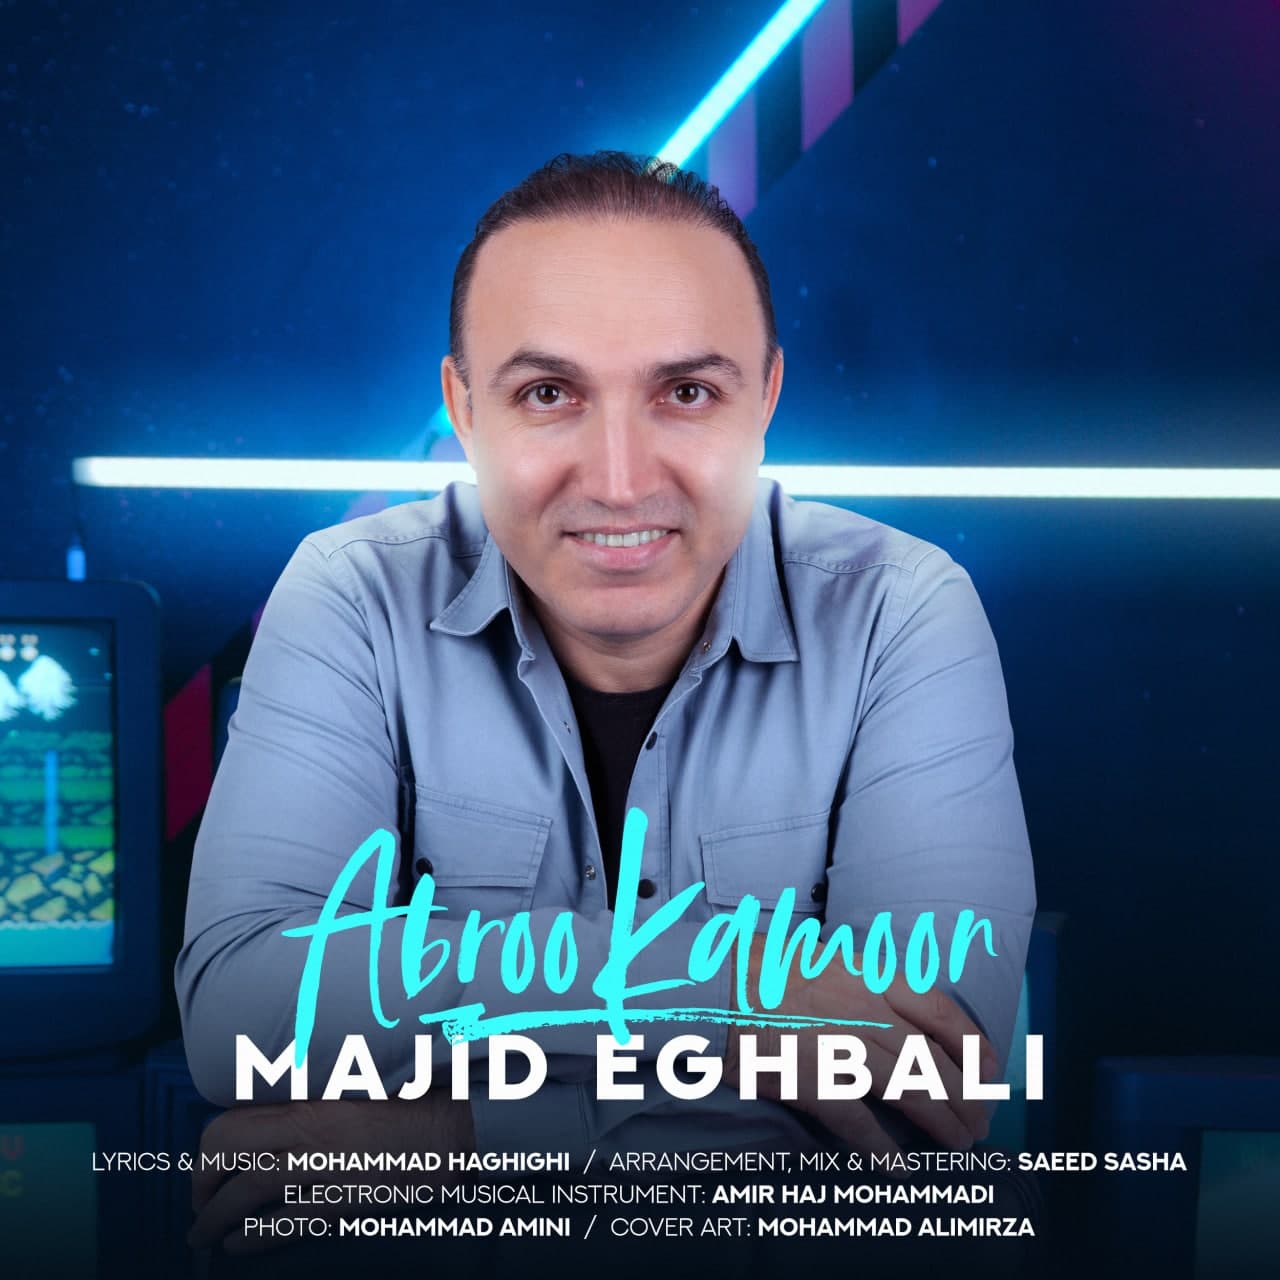 Majid Eghbali – Abroo Kamoon